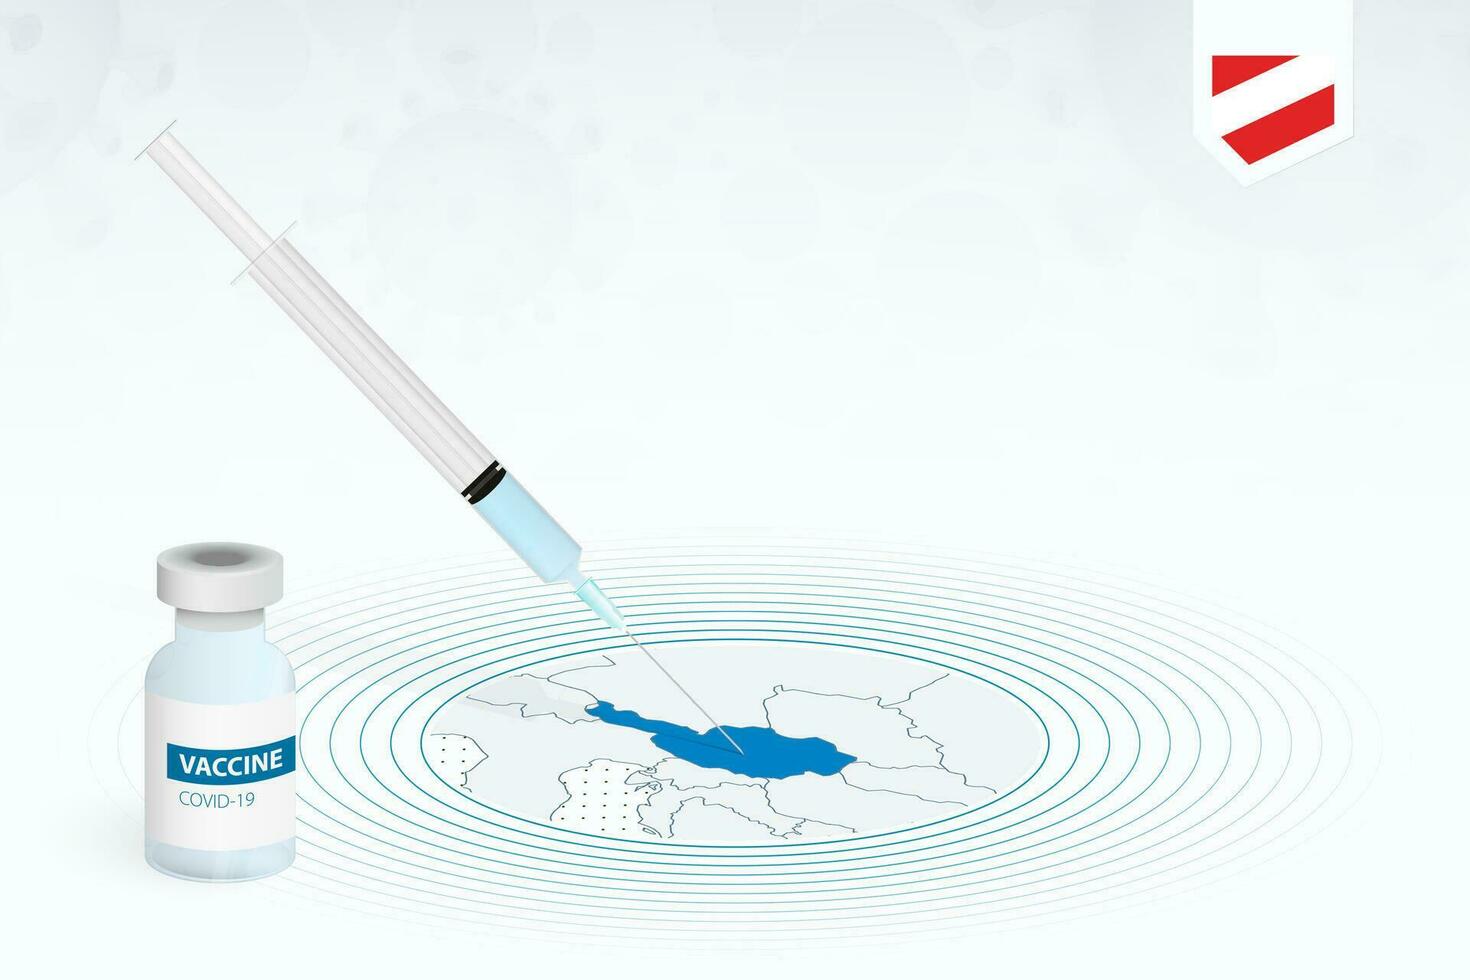 covid-19 vaccinazione nel Austria, coronavirus vaccinazione illustrazione con vaccino bottiglia e siringa iniezione nel carta geografica di Austria. vettore